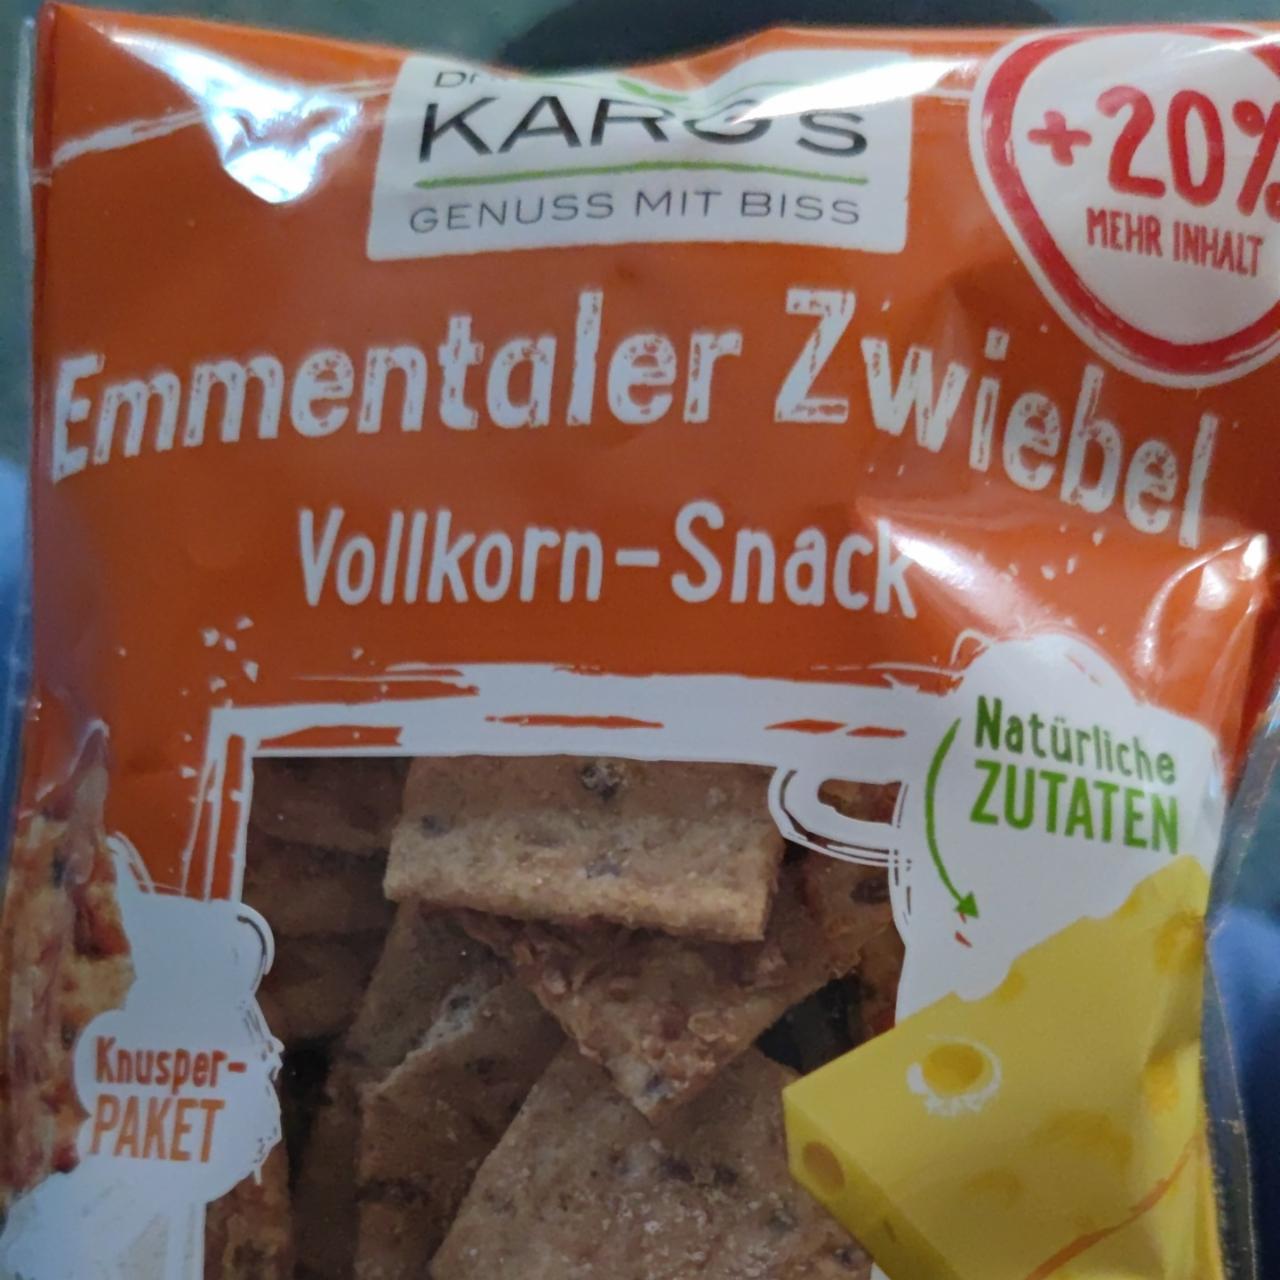 Fotografie - Emmentaler zwiebel vollkorn-snack Dr. Karg's